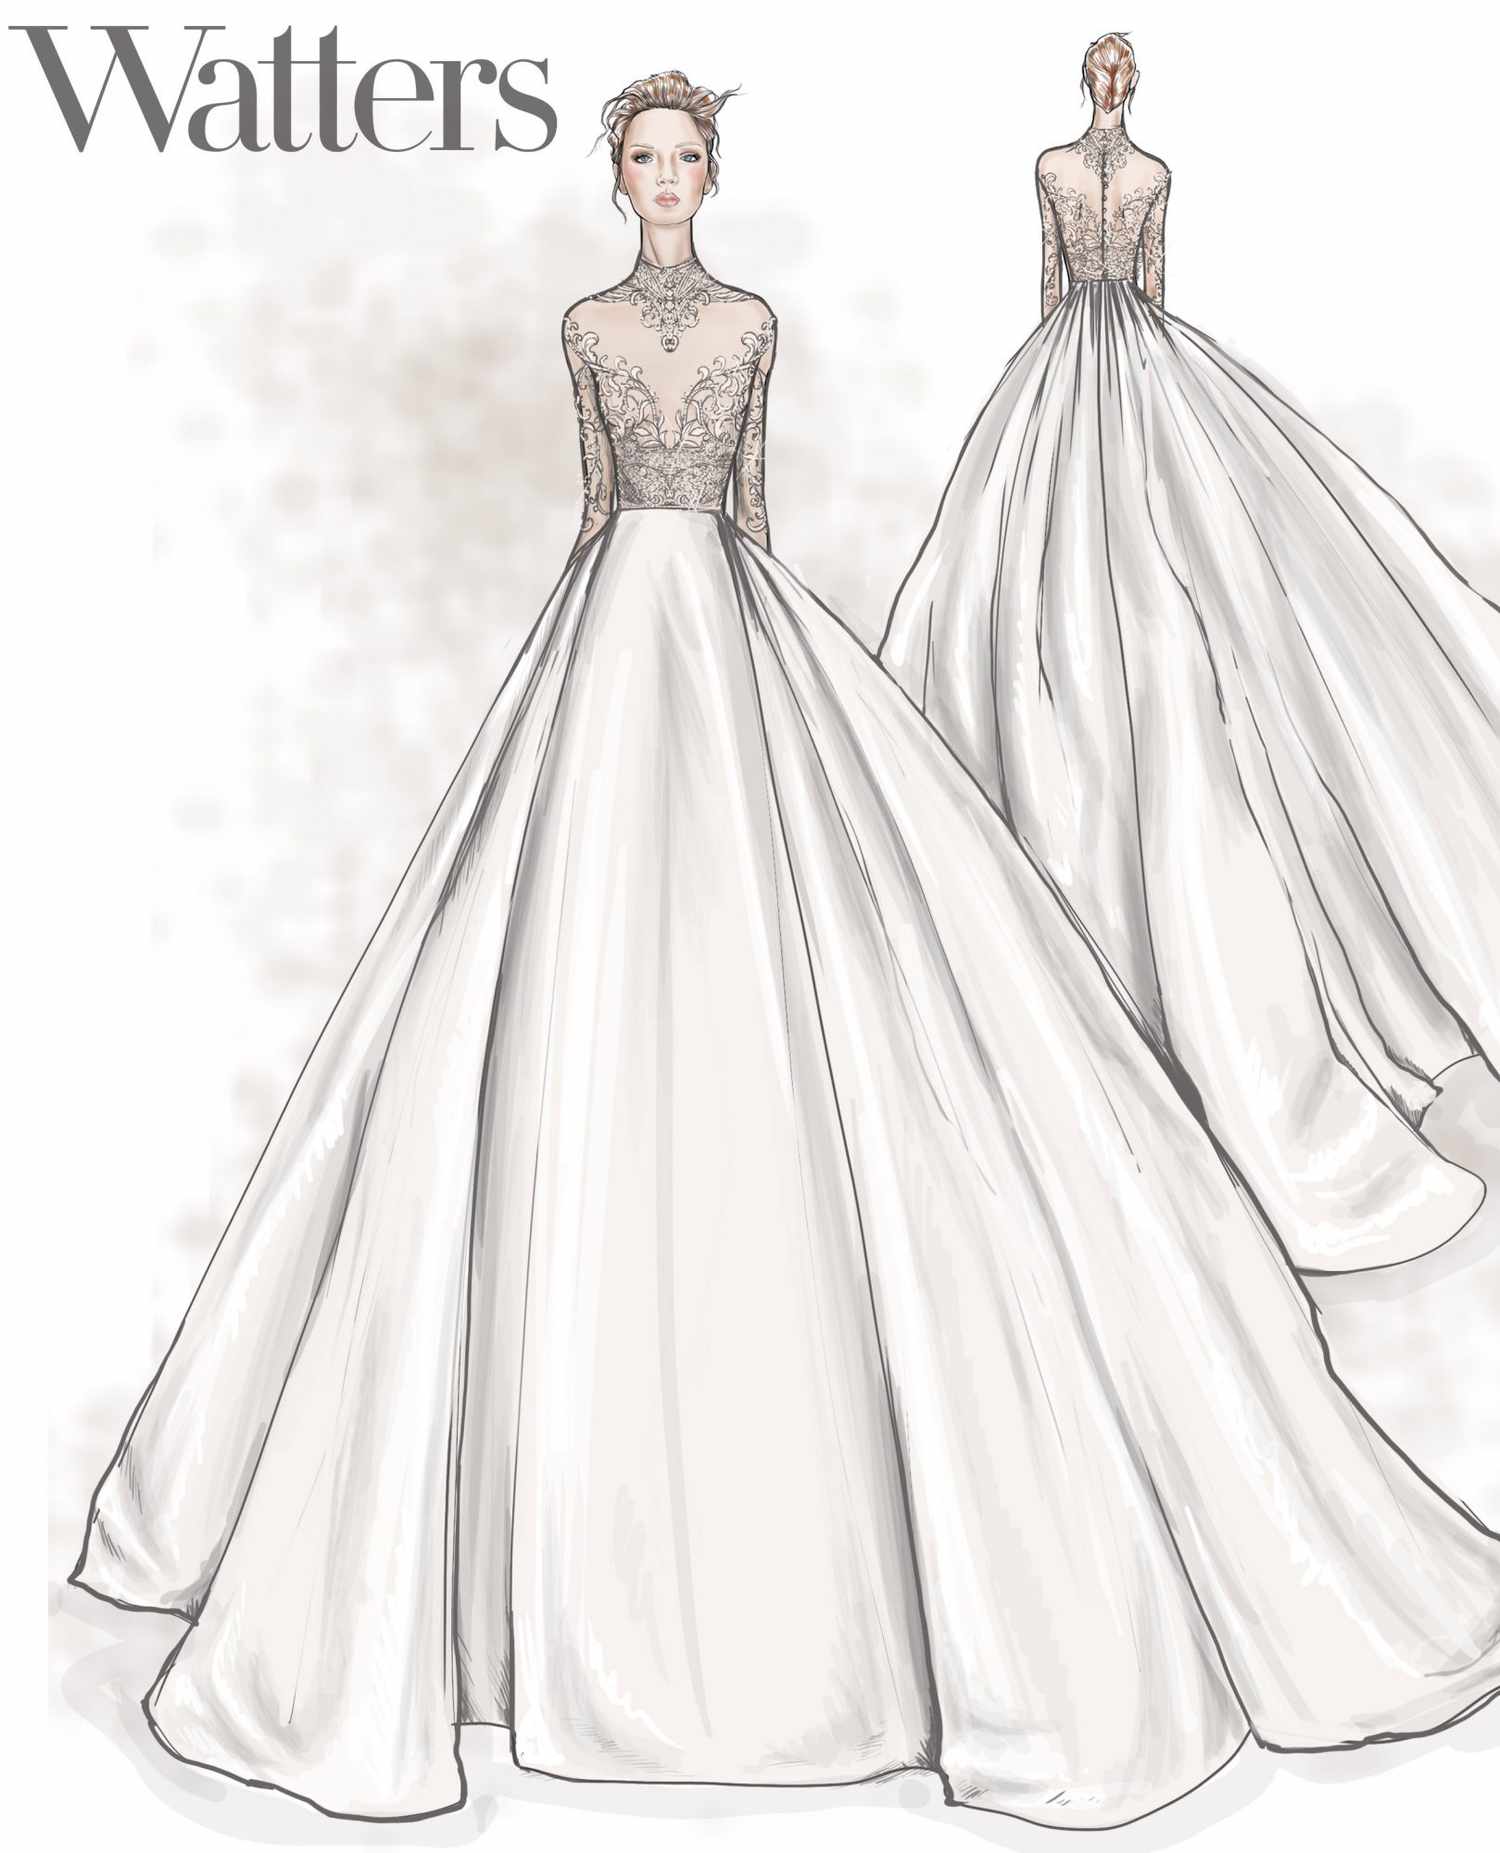 watters wedding dress sketch